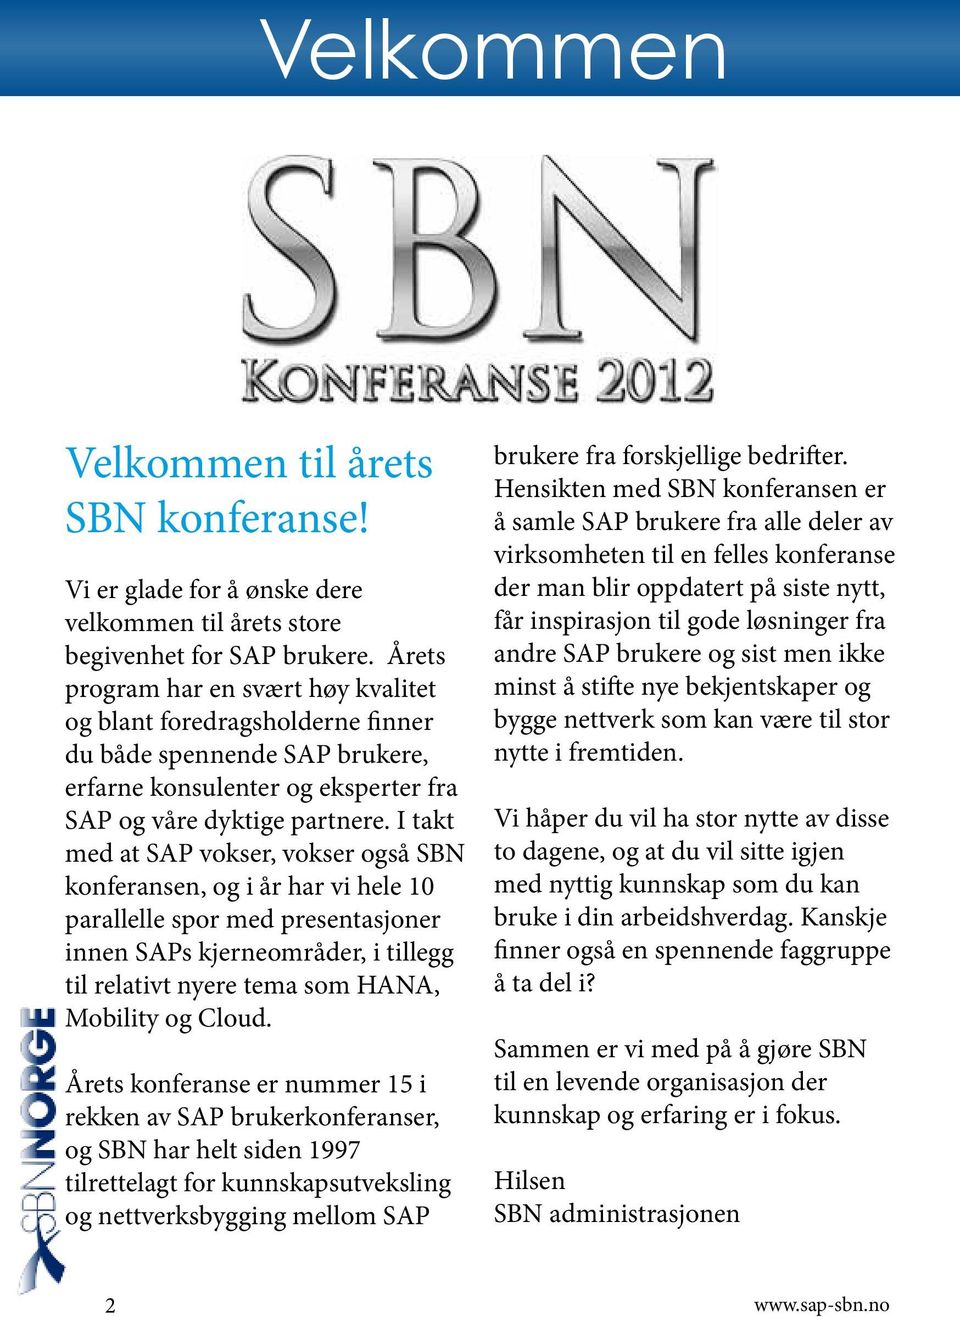 I takt med at SAP vokser, vokser også SBN konferansen, og i år har vi hele 10 parallelle spor med presentasjoner innen SAPs kjerneområder, i tillegg til relativt nyere tema som HANA, Mobility og